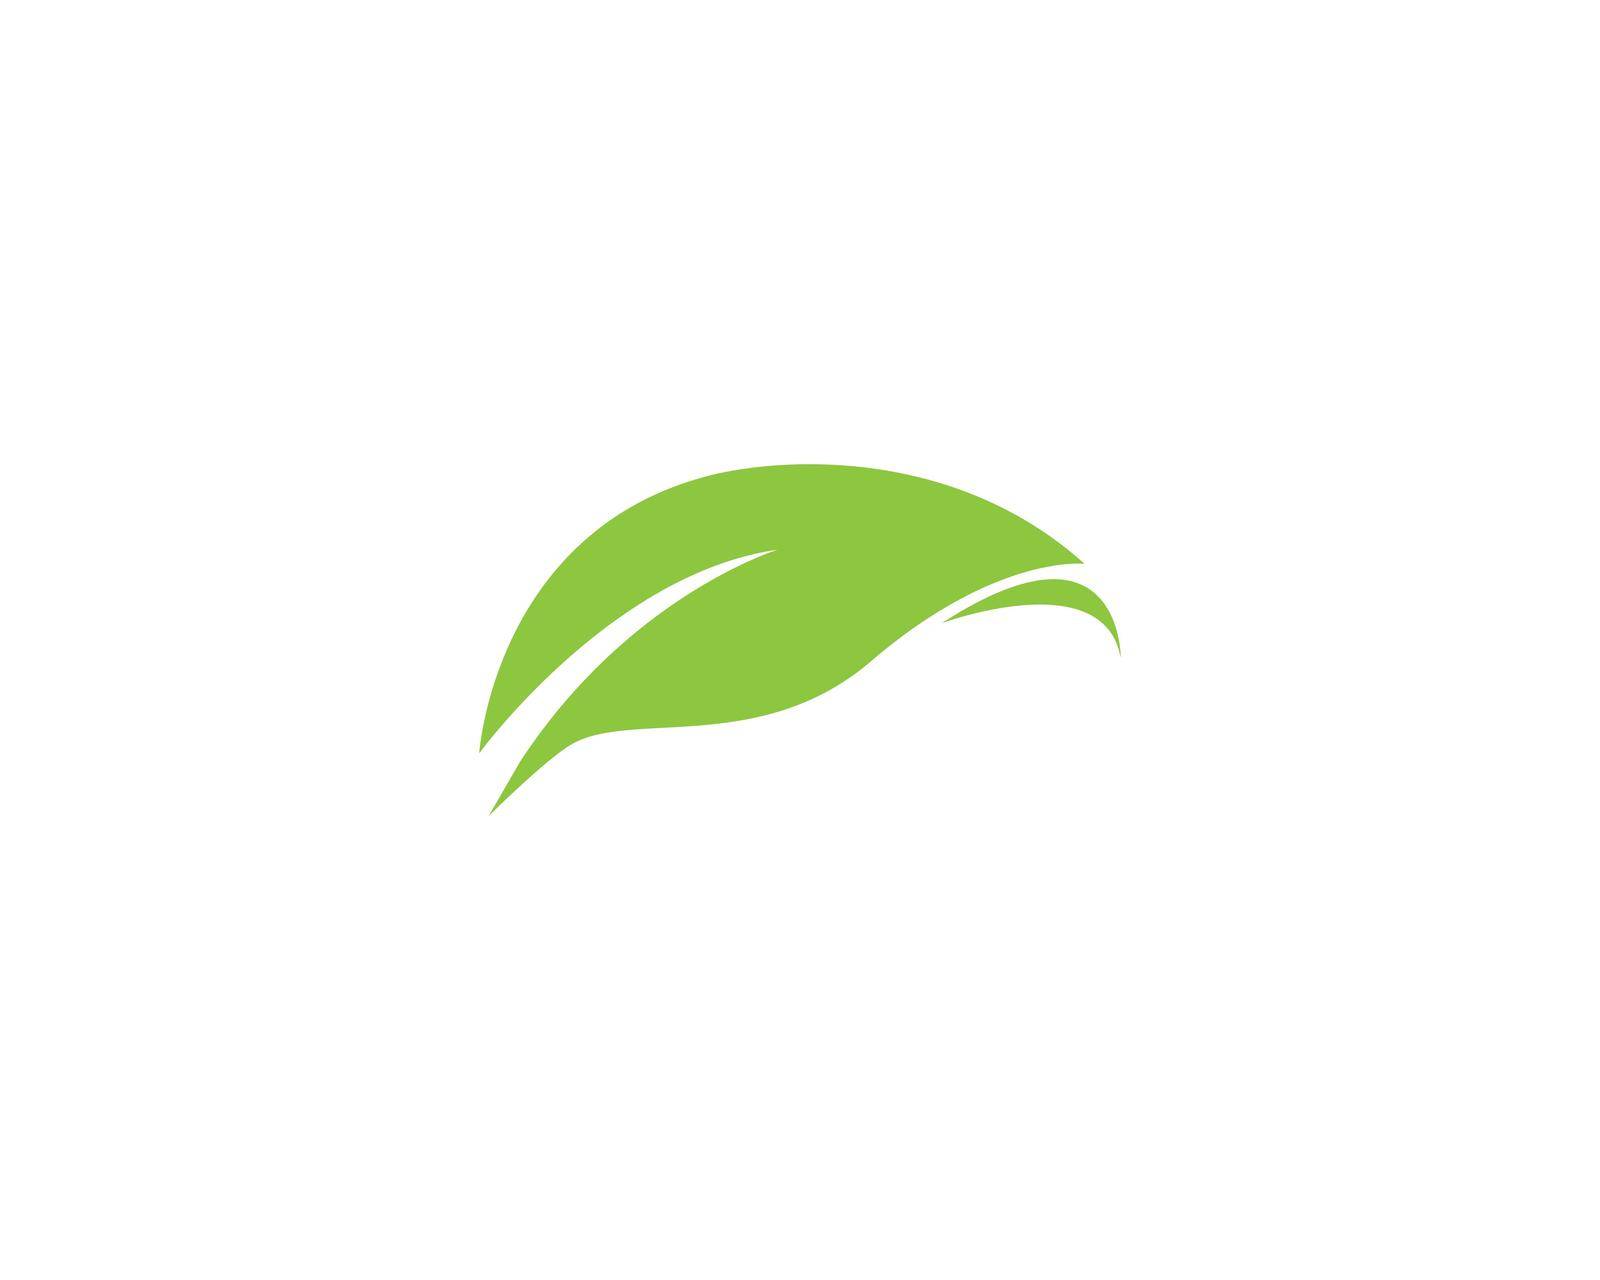 green leaf logo vector by awk